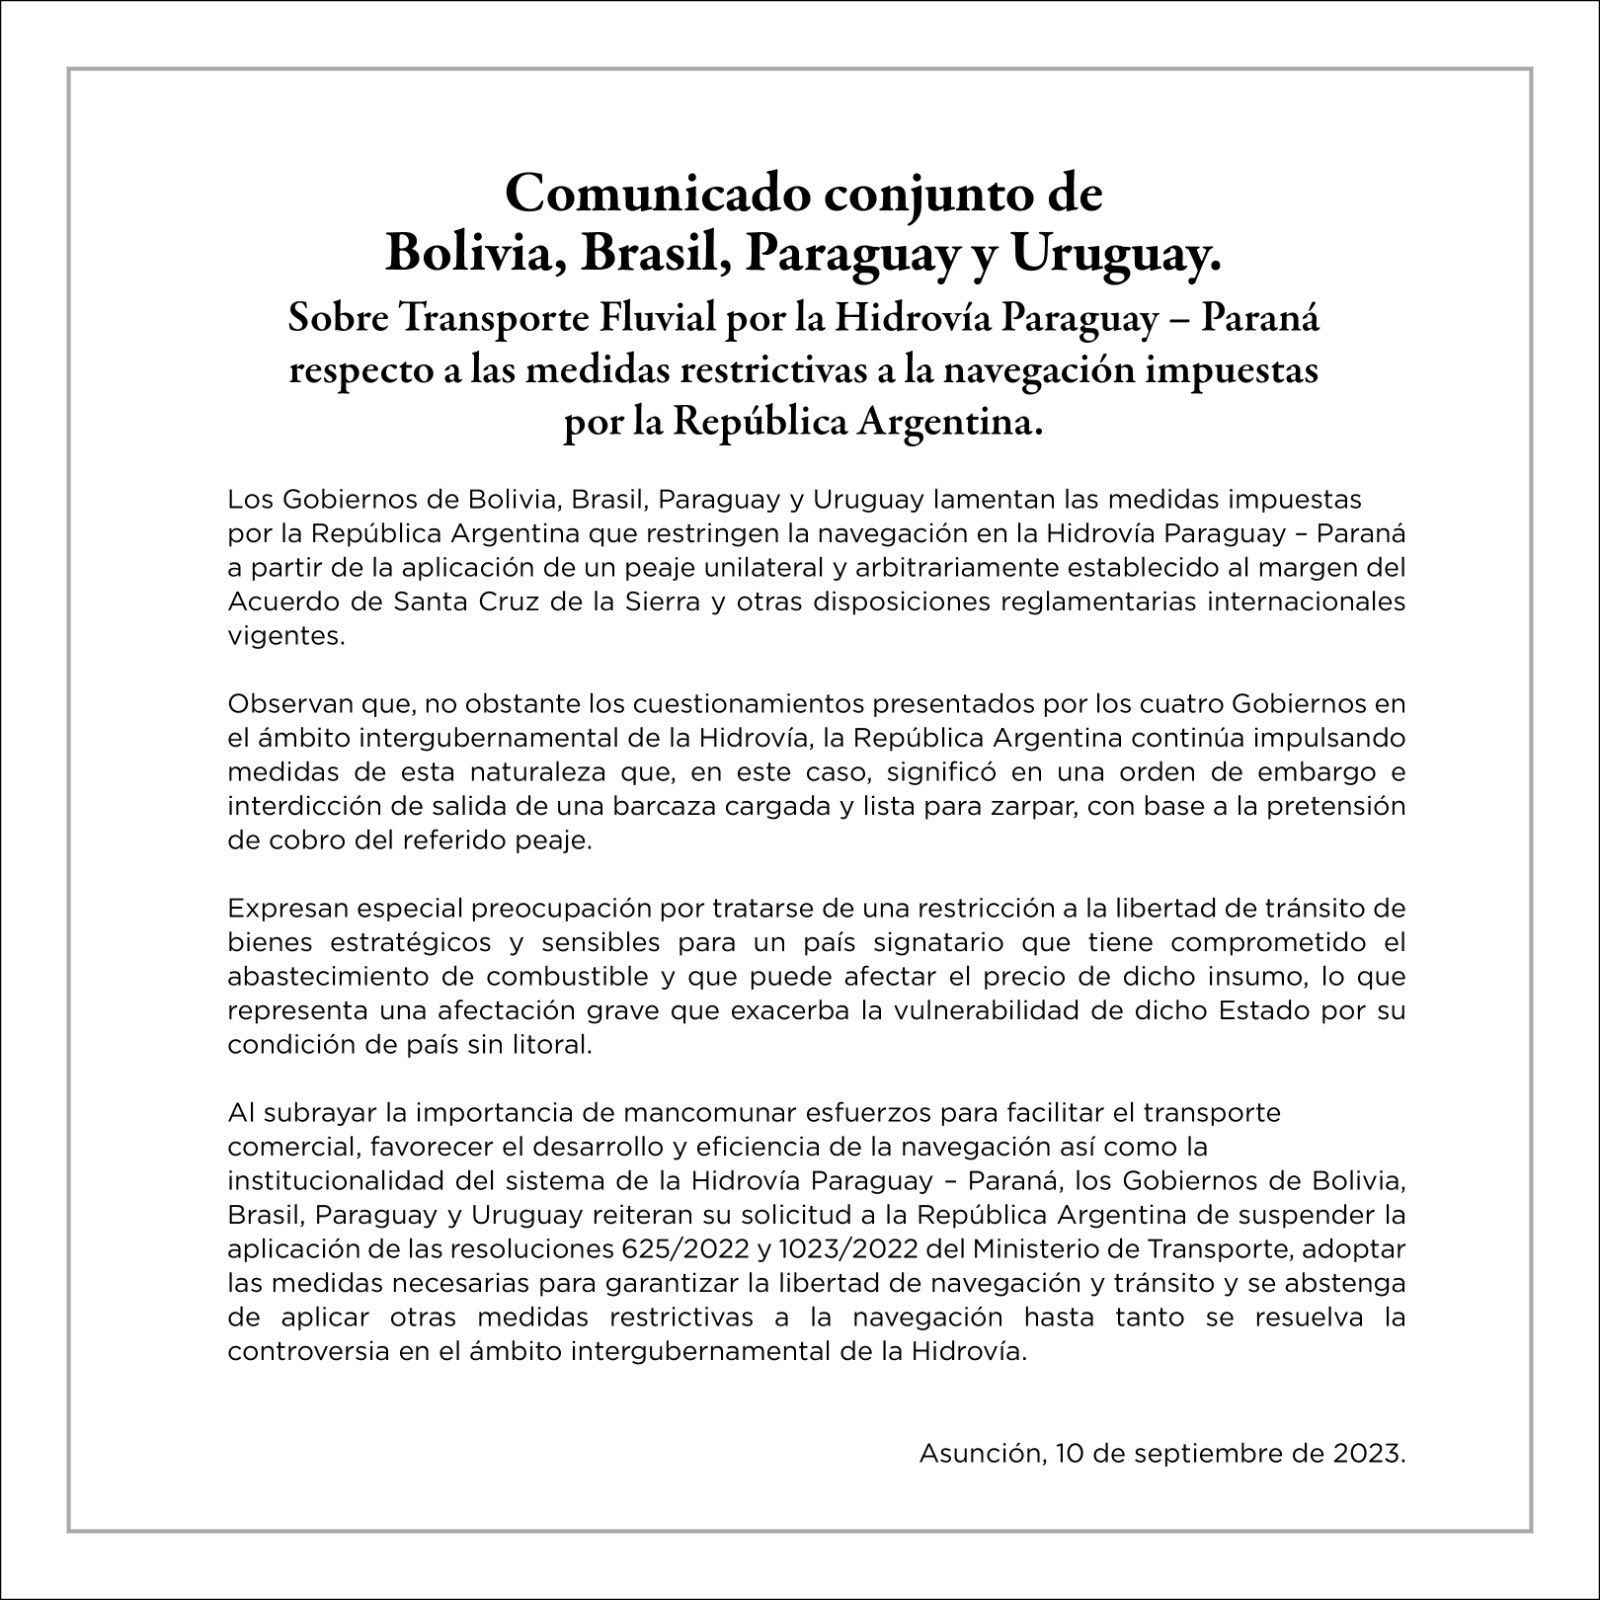 El comunicado difundido por los gobiernos de Bolivia, Brasil, Paraguay y Uruguay.